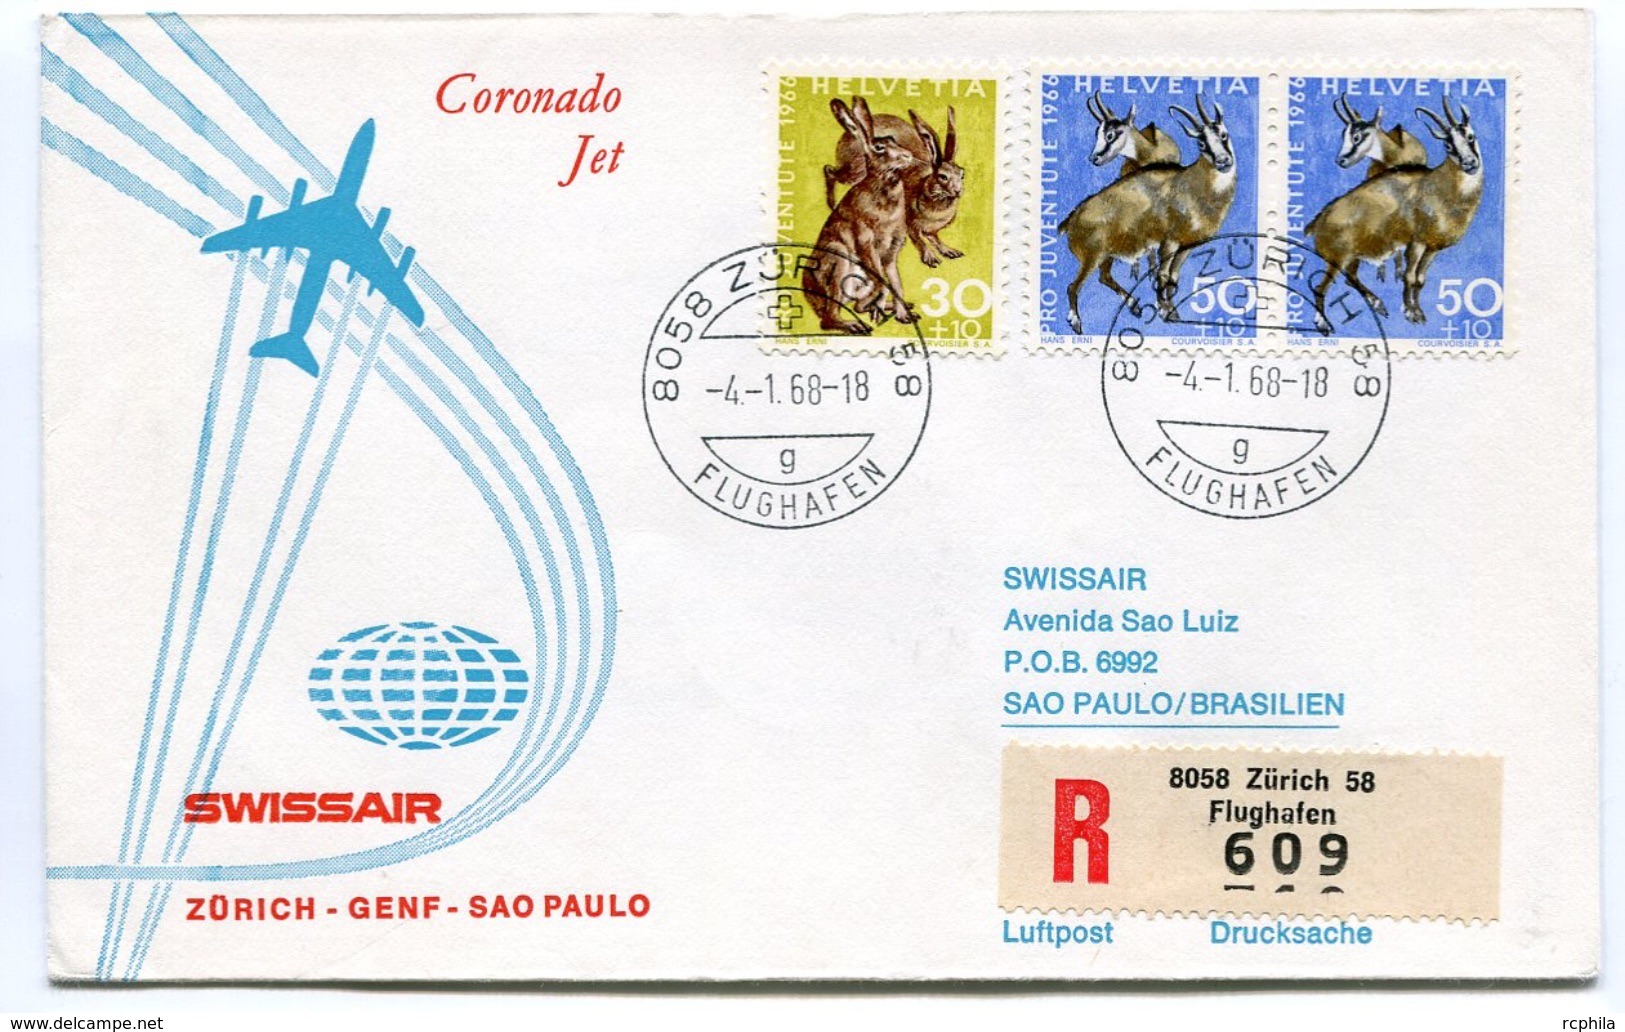 RC 6608 SUISSE SWITZERLAND 1968 1er VOL SWISSAIR ZURICH - SAO PAULO BRESIL FFC LETTRE COVER - Eerste Vluchten